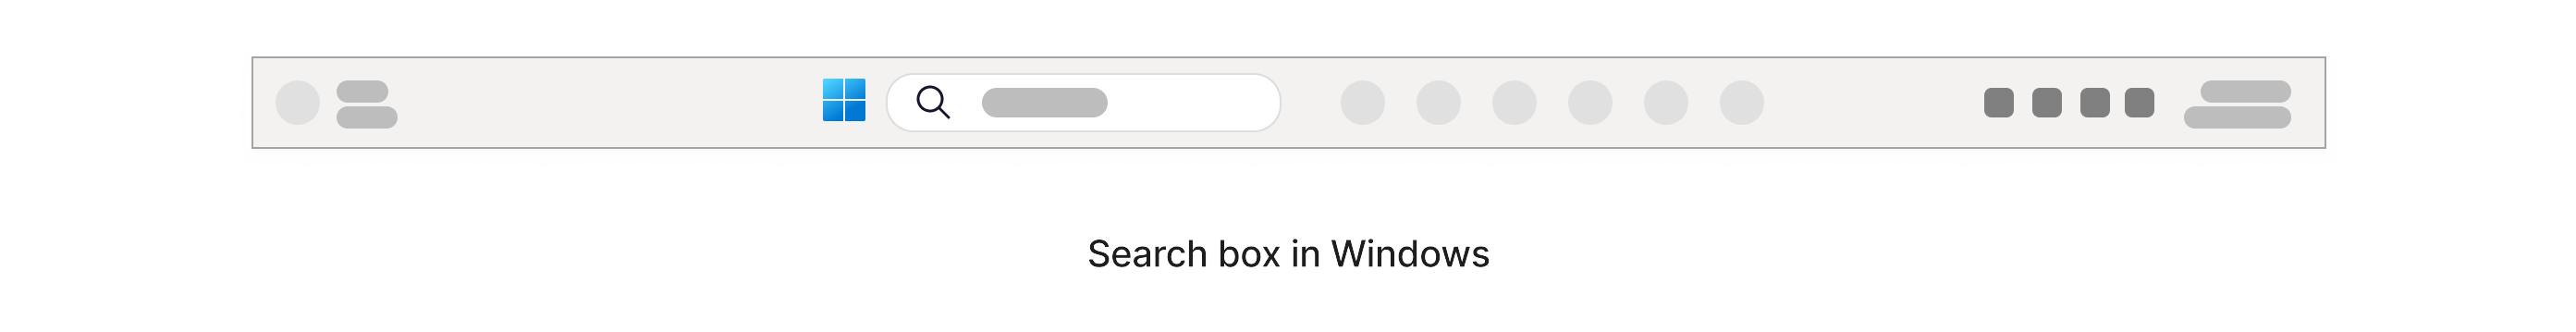 Поле поиска со значком лупы, расположенным на панели задач Windows в нижней части экрана.